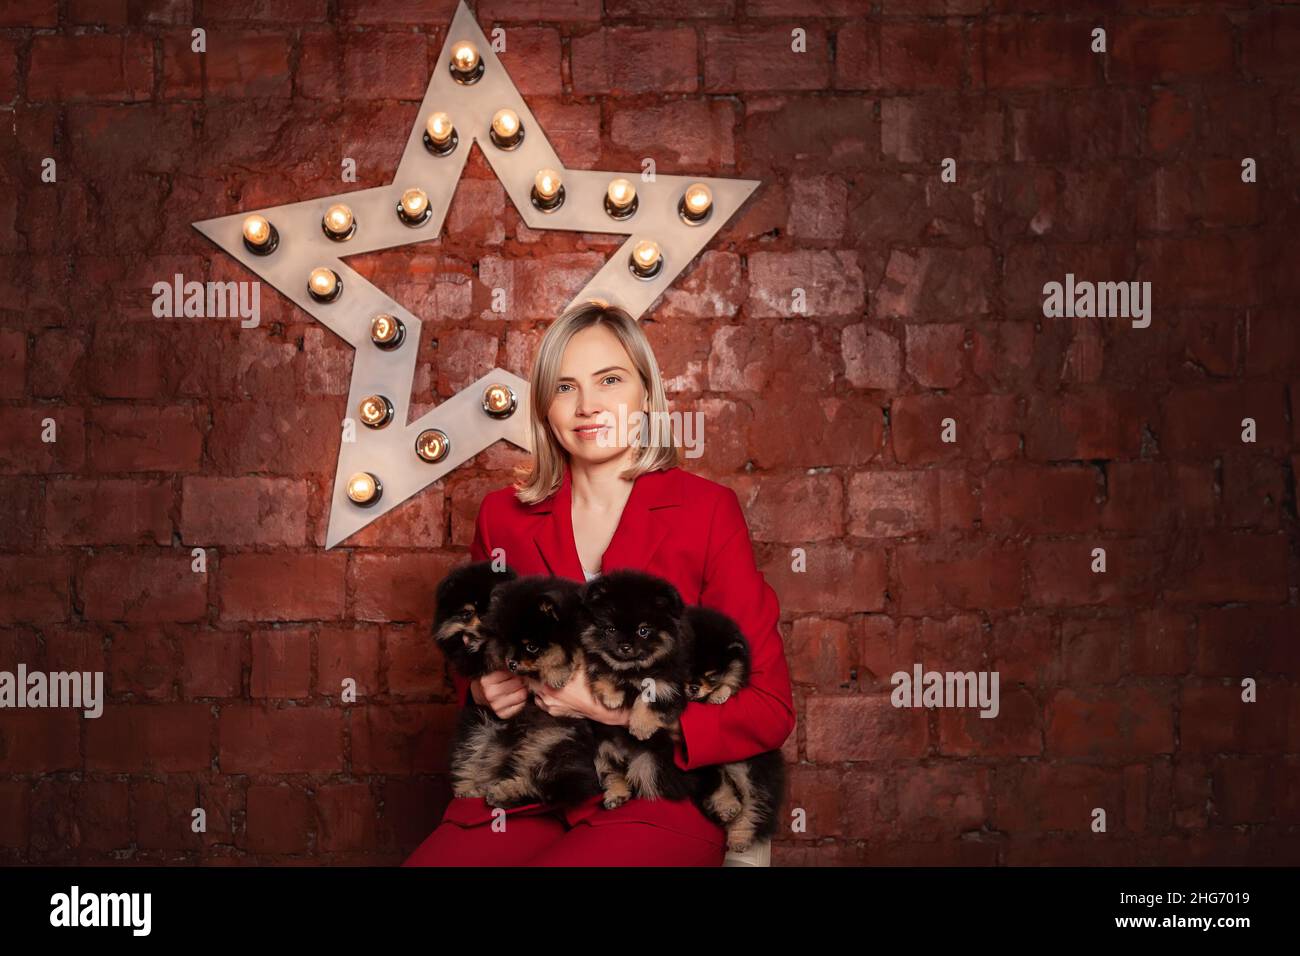 Sonriendo bonita mujer de negocios en chaqueta roja que sostiene cachorros lindos de perro de raza de spitz pomeranian. Propietario o criador con camada de cachorros. Foto de stock